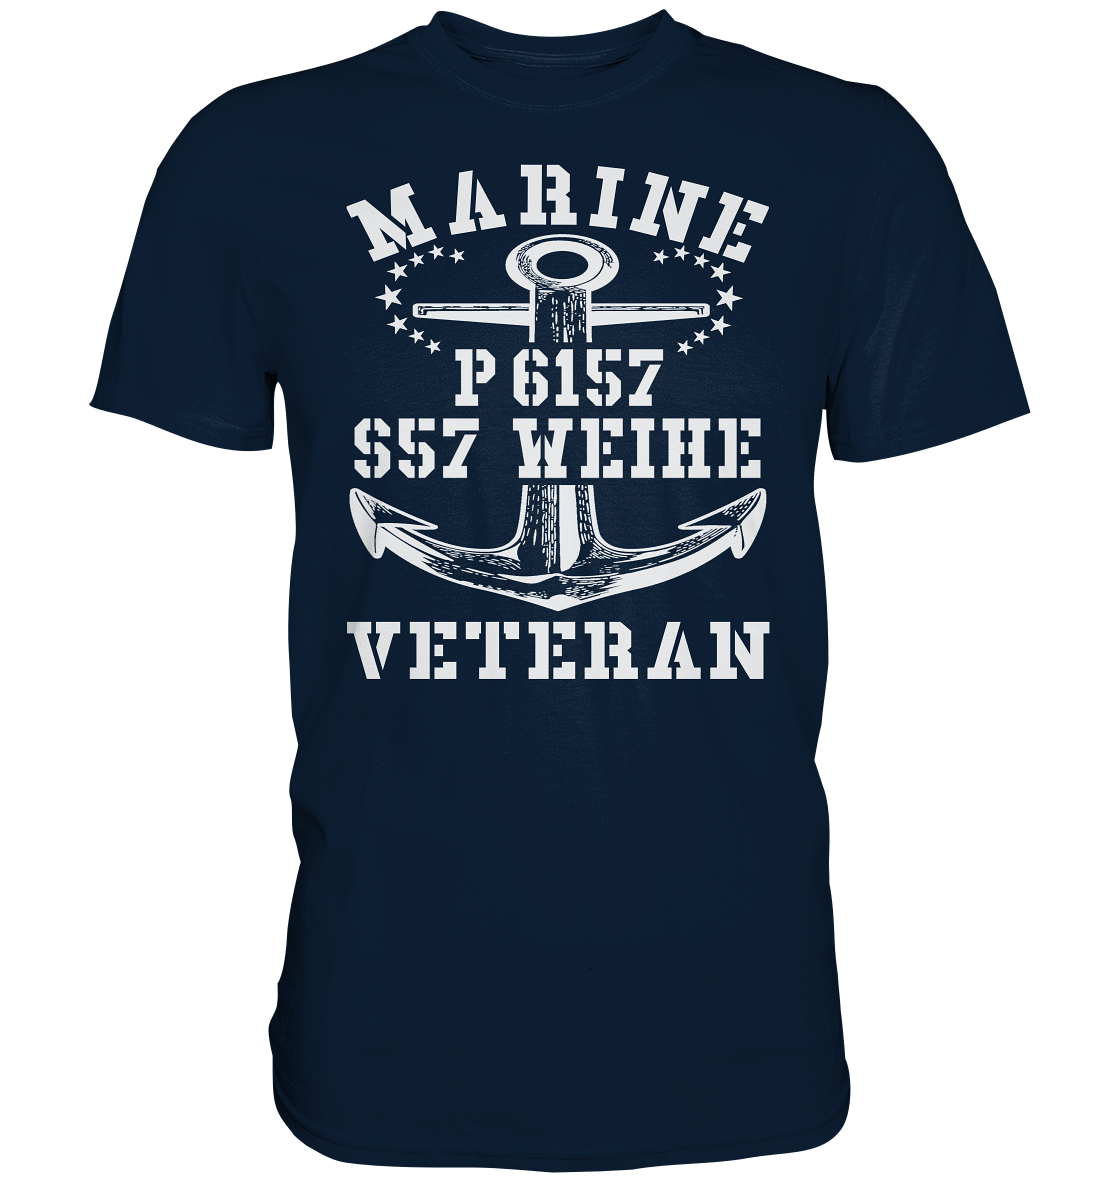 P6157 S57 WEIHE Marine Veteran - Premium Shirt